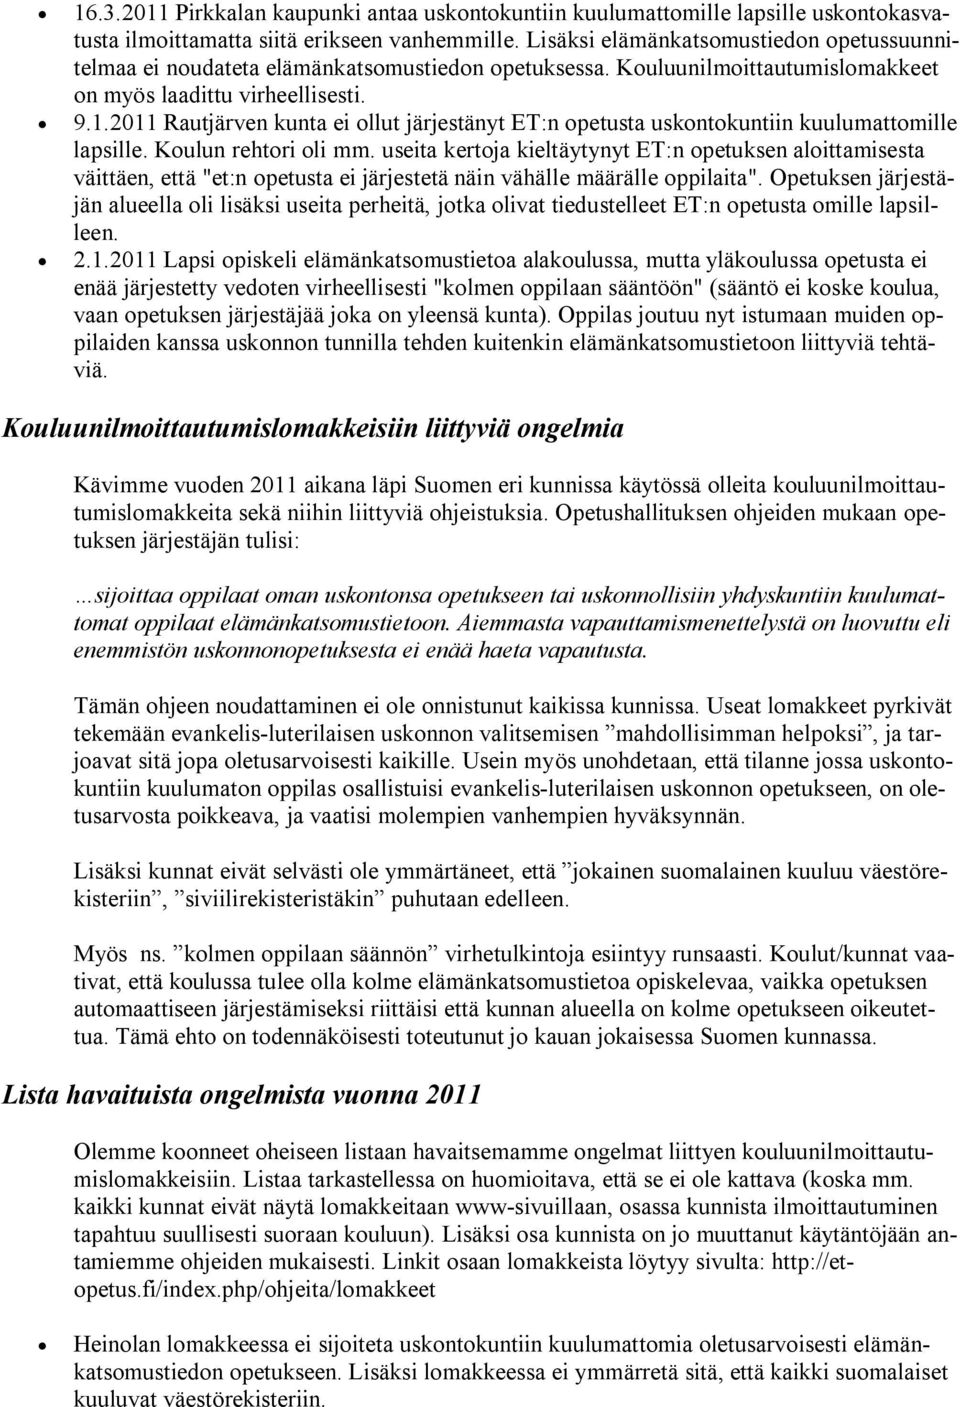 2011 Rautjärven kunta ei ollut järjestänyt ET:n opetusta uskontokuntiin kuulumattomille lapsille. Koulun rehtori oli mm.